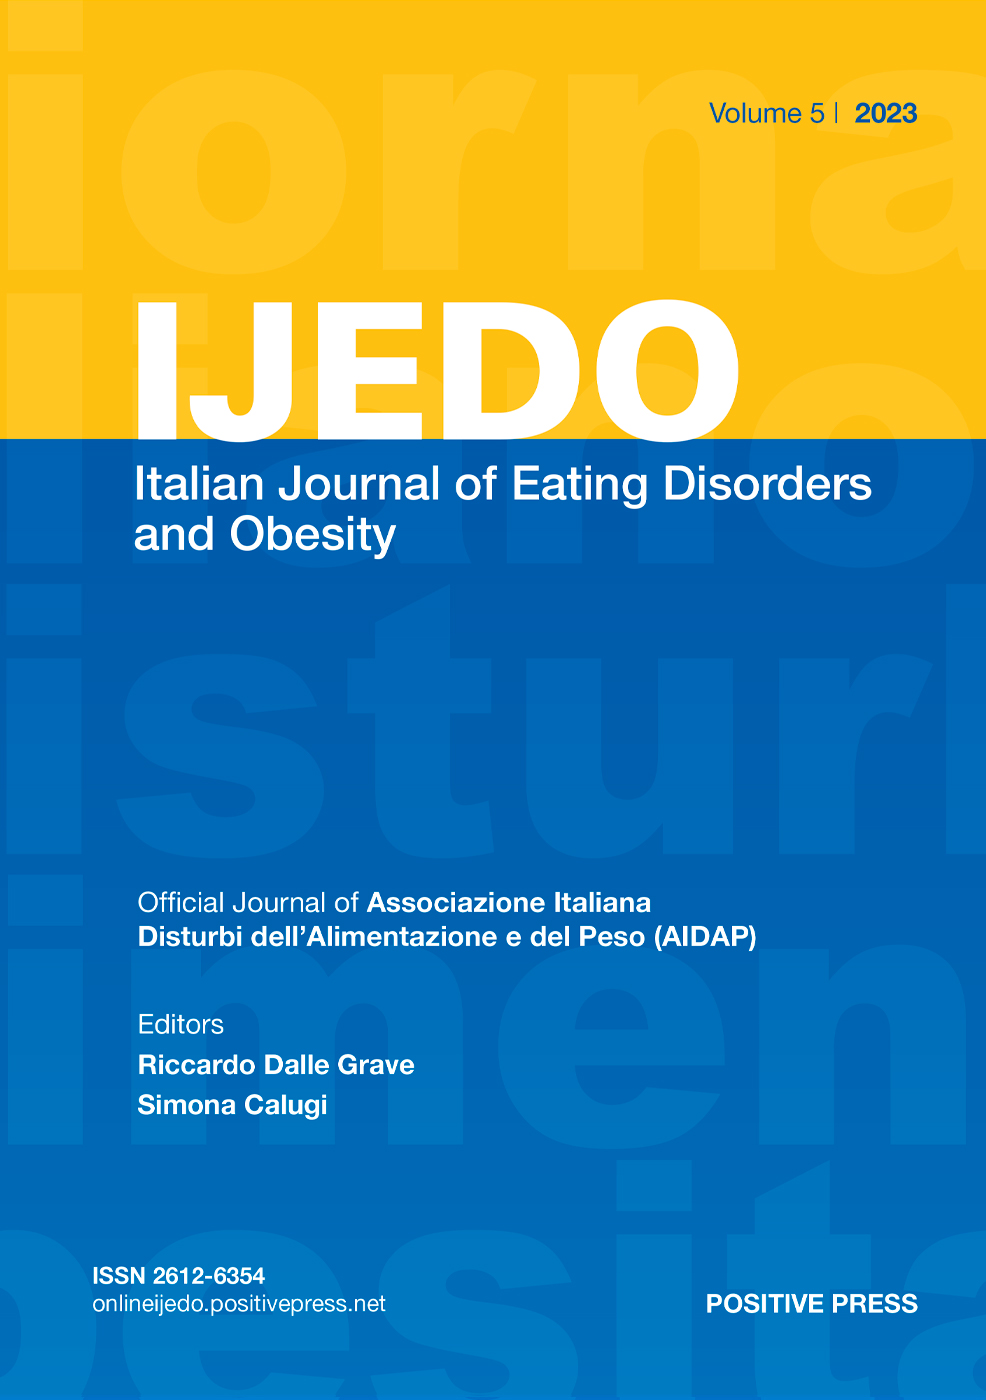 IJEDO Giornale Italiano dei Disturbi dell'Alimentazione e dell'Obesita / Italian Journal of Eating Disorders and Obesity